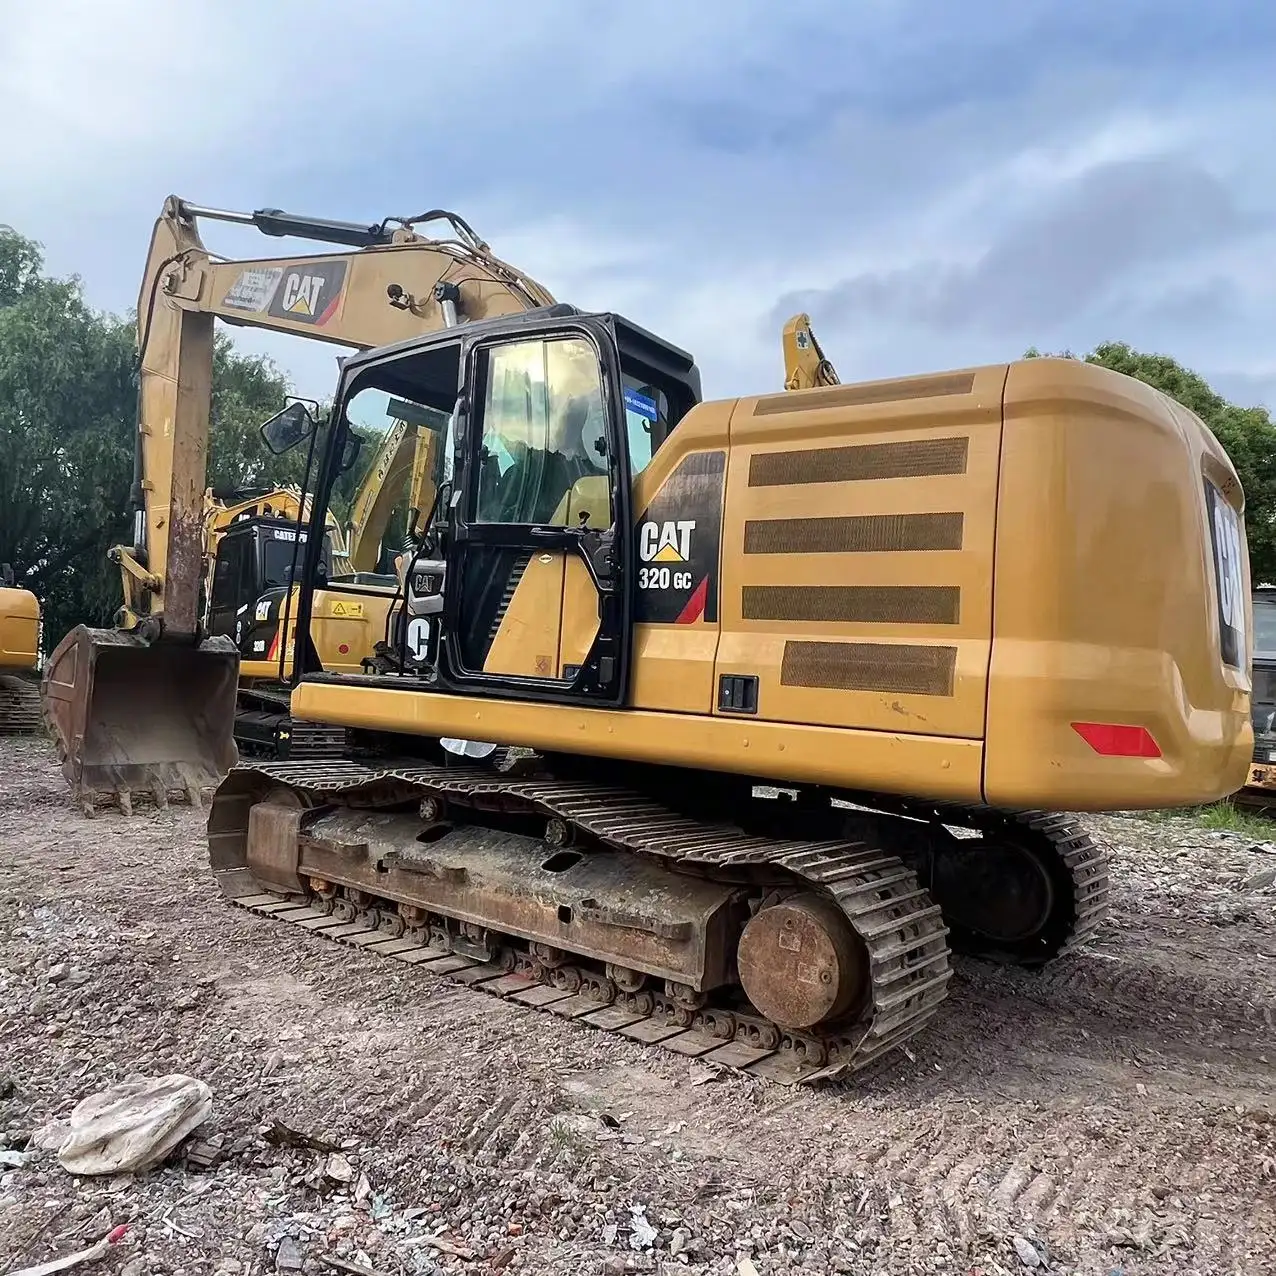 2019 Year Manufacture USED Caterpillar 320GC Crawler Excavator CAT 320GC used excavator in stock